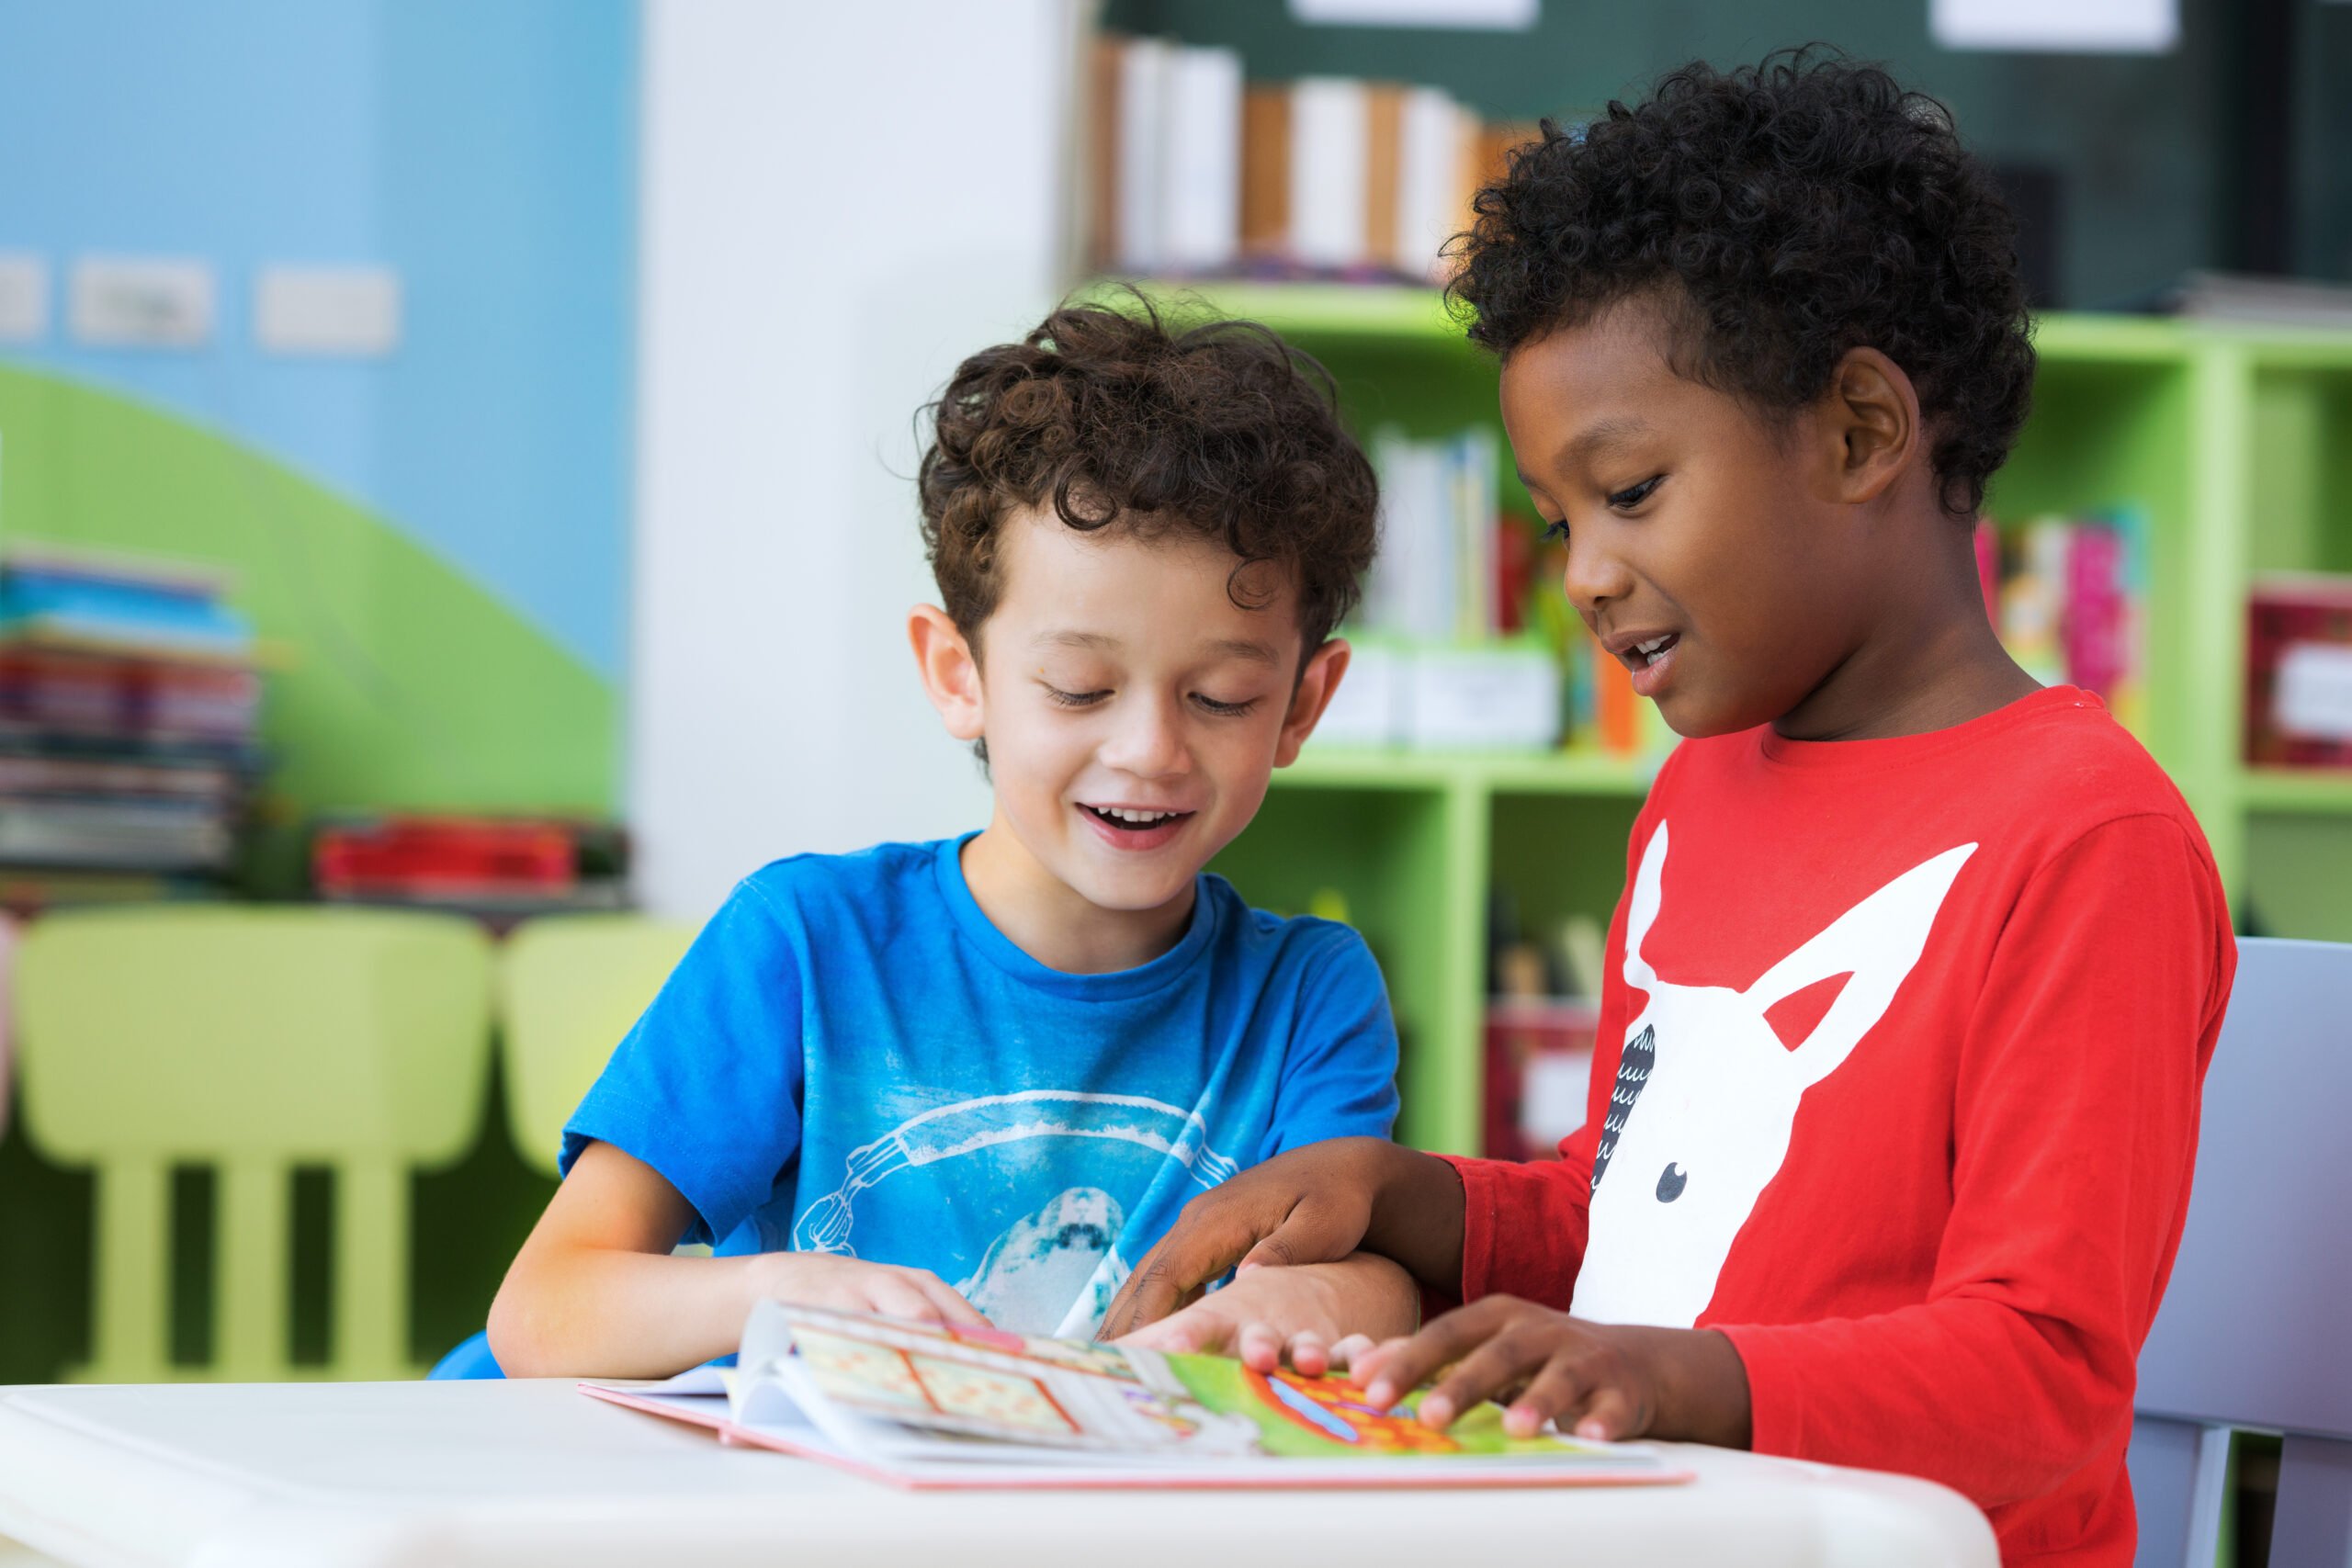 Foto mostra duas crianças, uma preta e outra branca, lendo um livro na escola